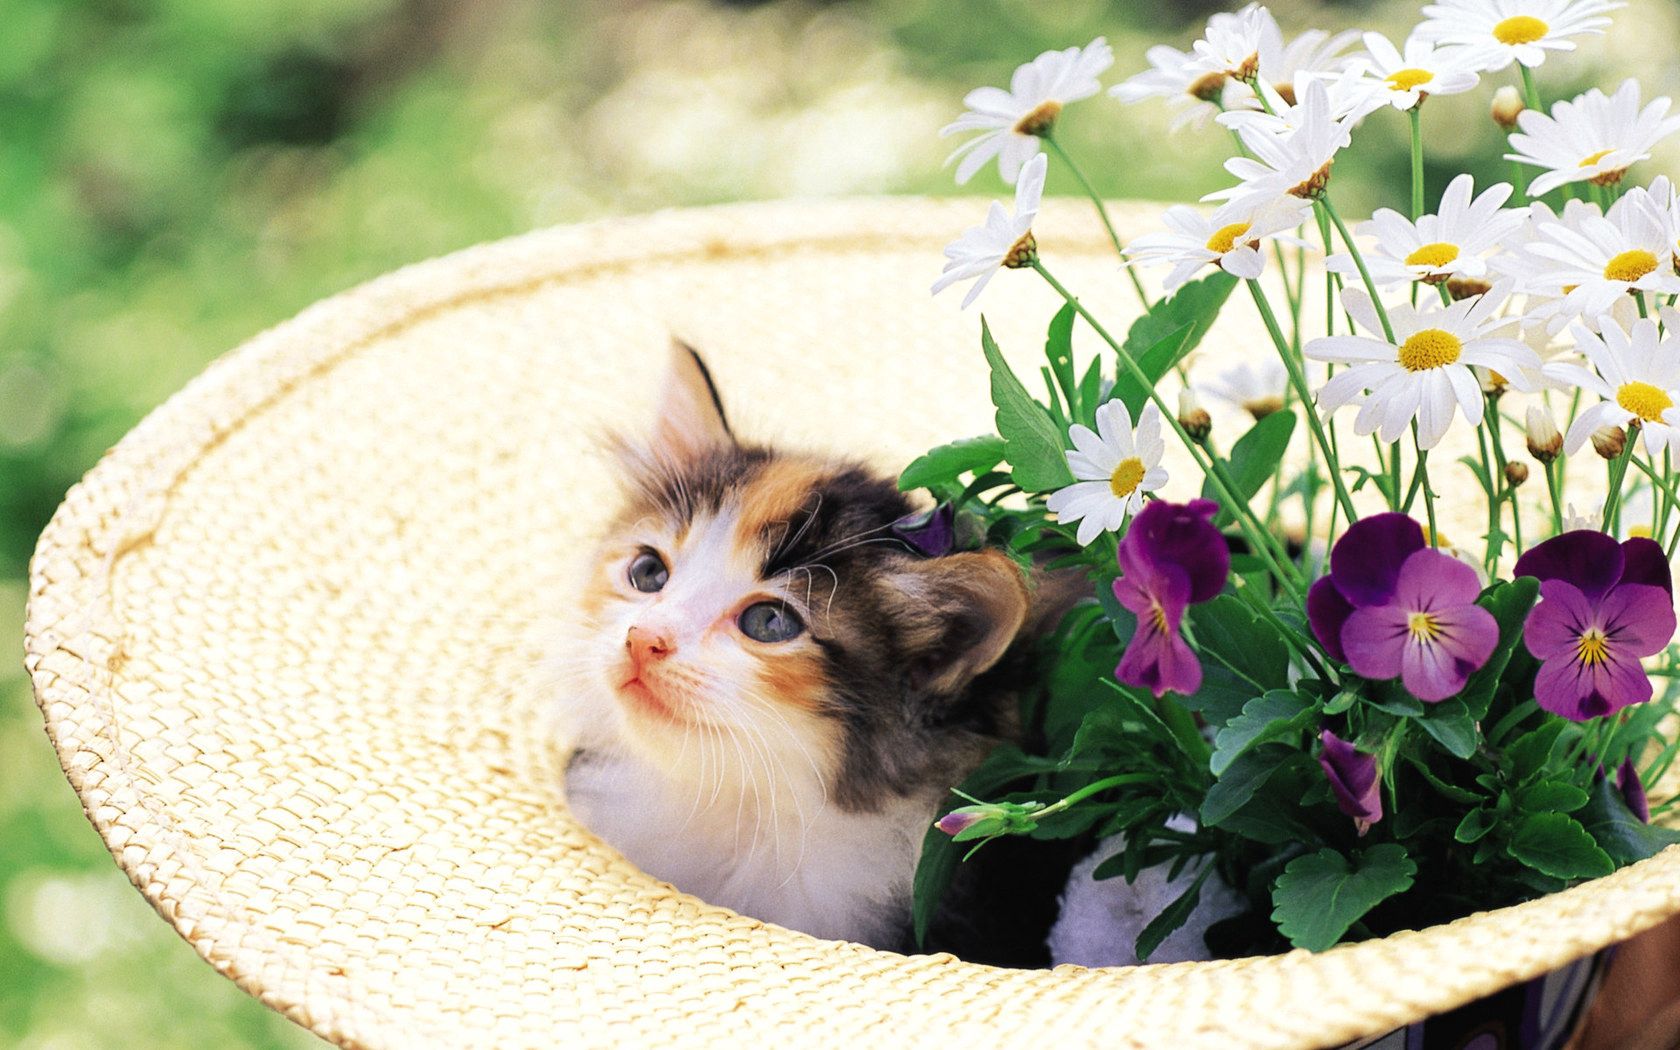 kitty, animals, grass, kitten, muzzle, hat